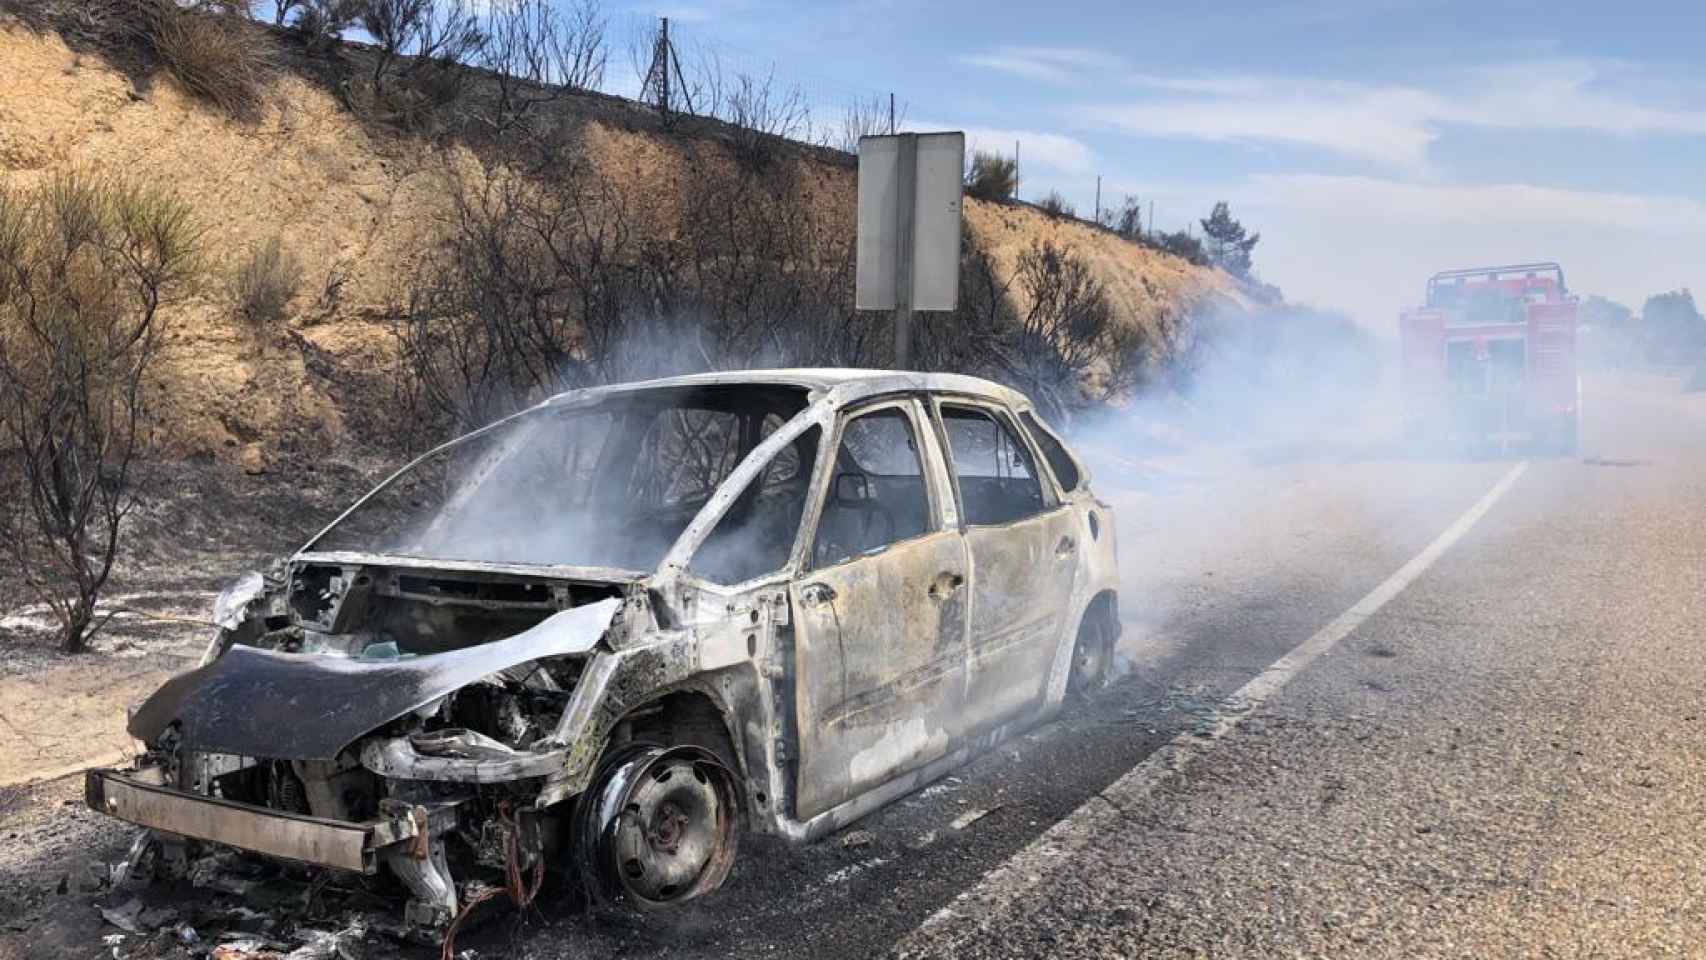 Arde un coche en Rionegro, en la provincia de Zamora